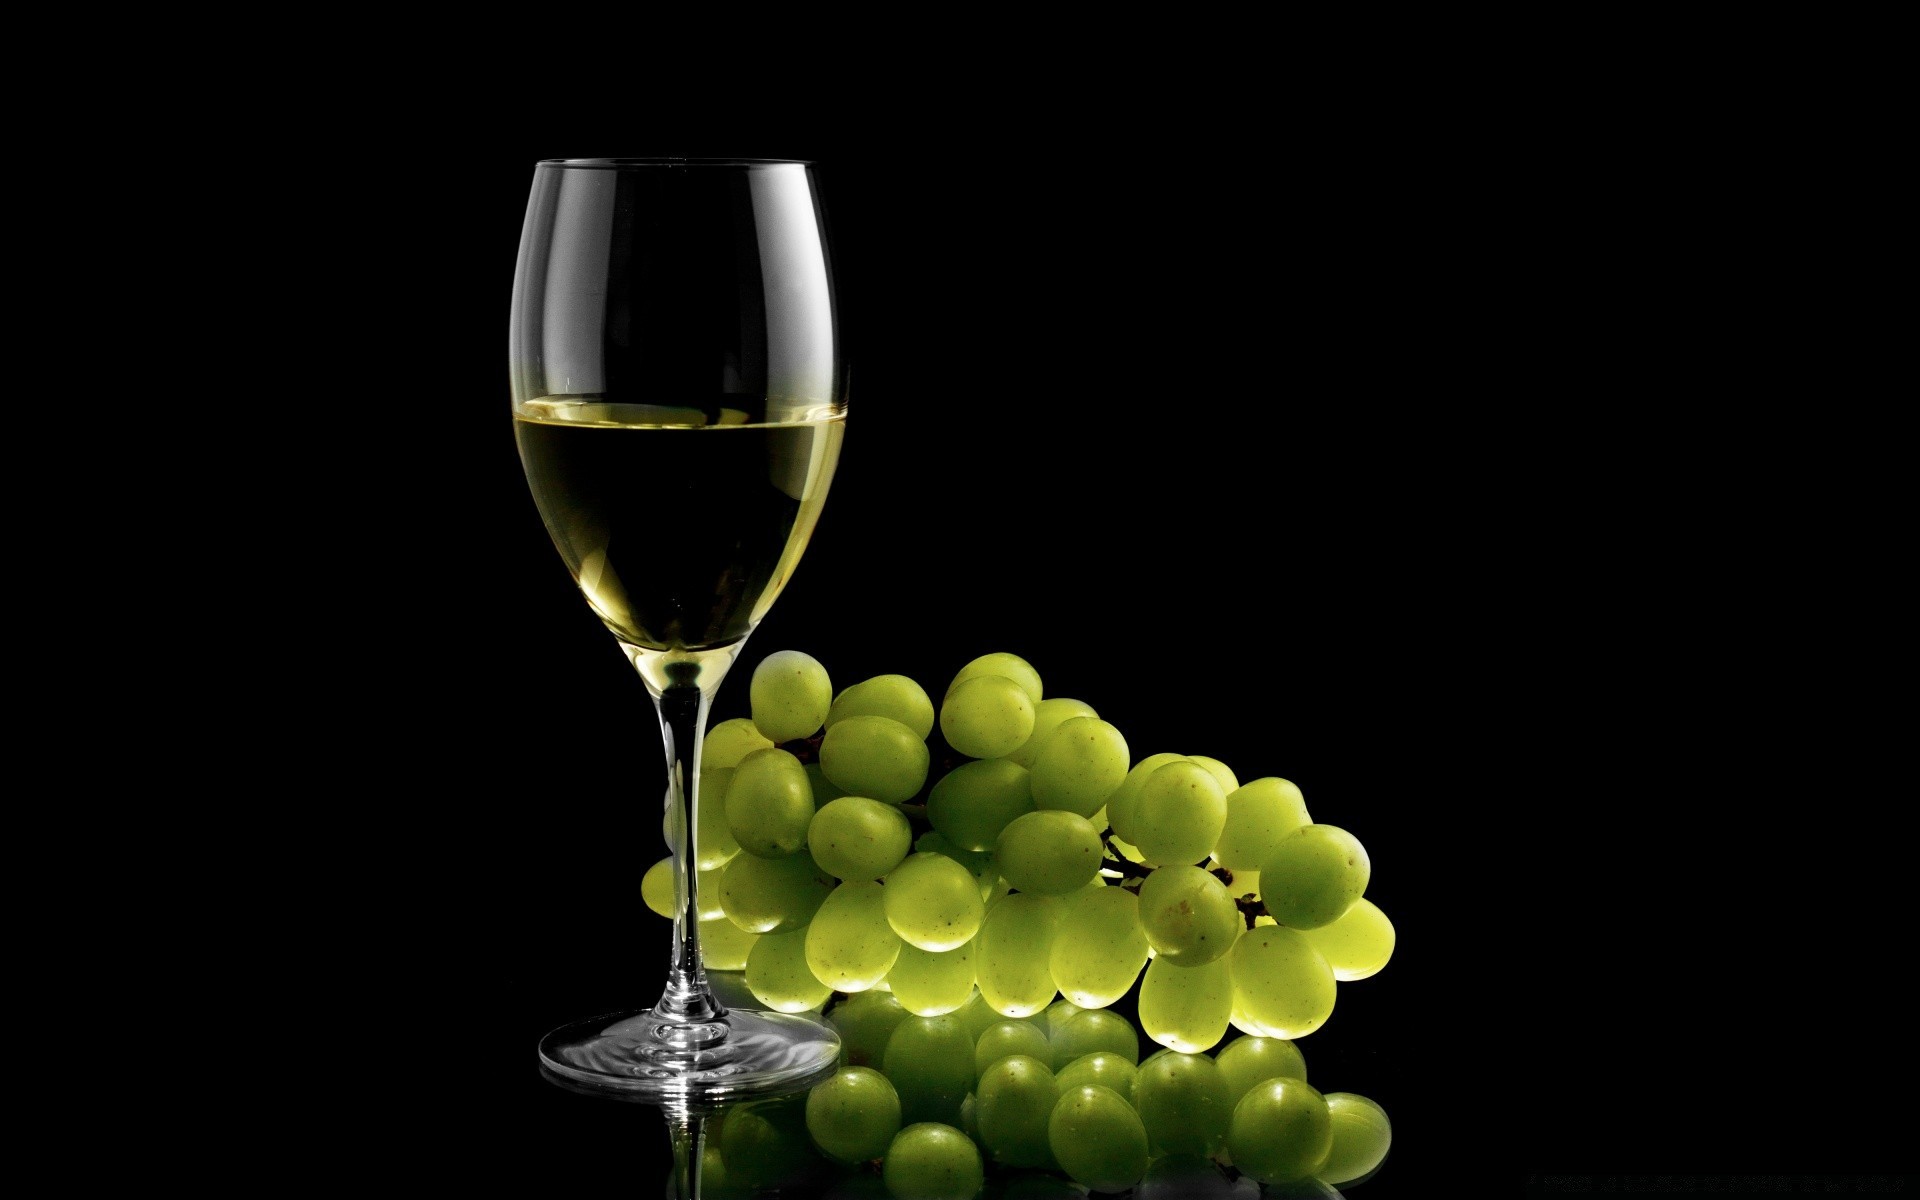 напитки вина стекло пить алкоголь винзавод виноград вайн бутылка бокал жидкость мерло участник